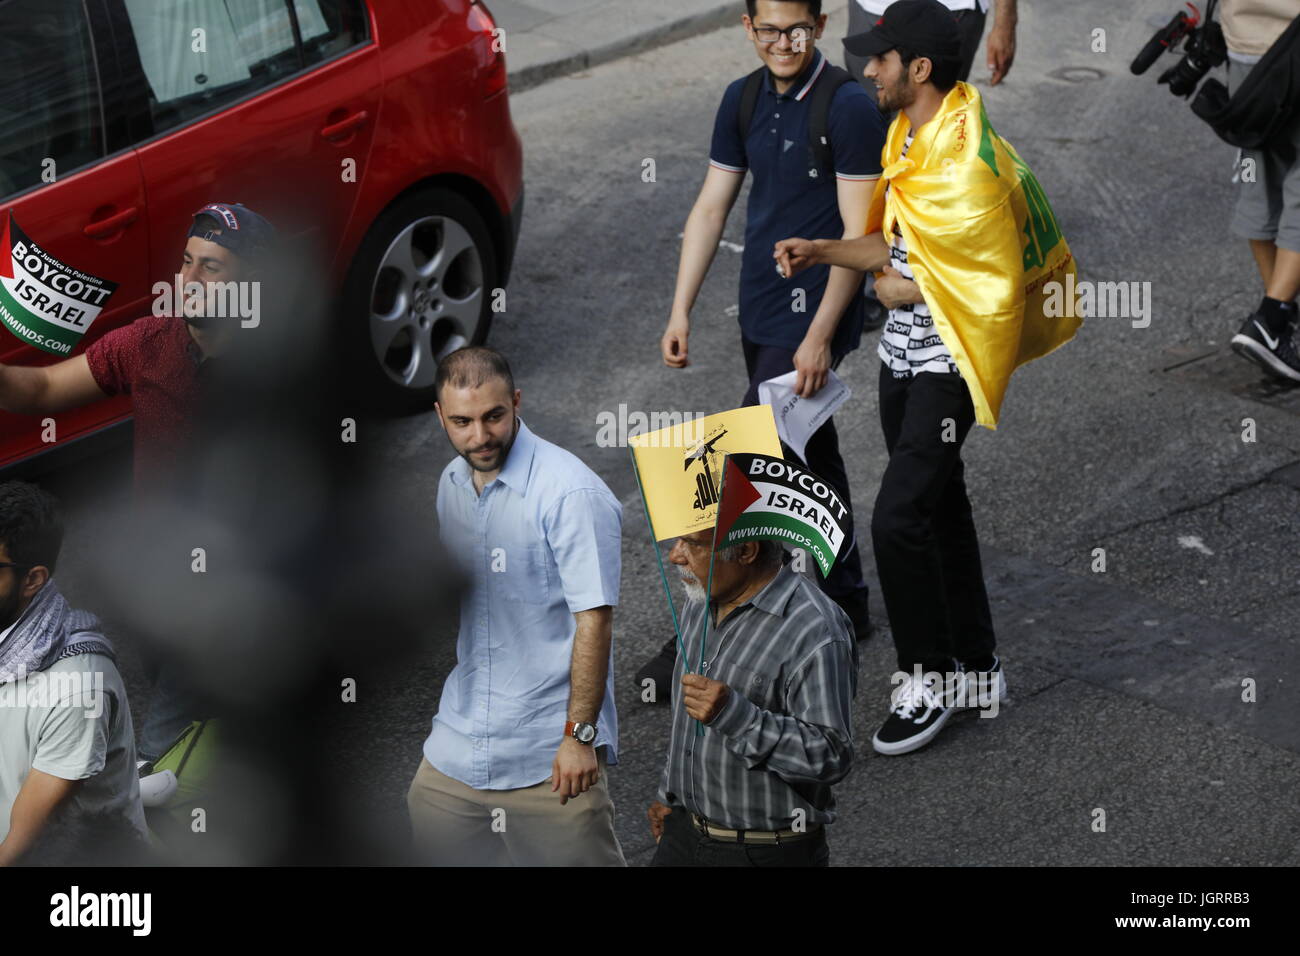 Al Quds día de marzo en el centro de Londres Foto de stock